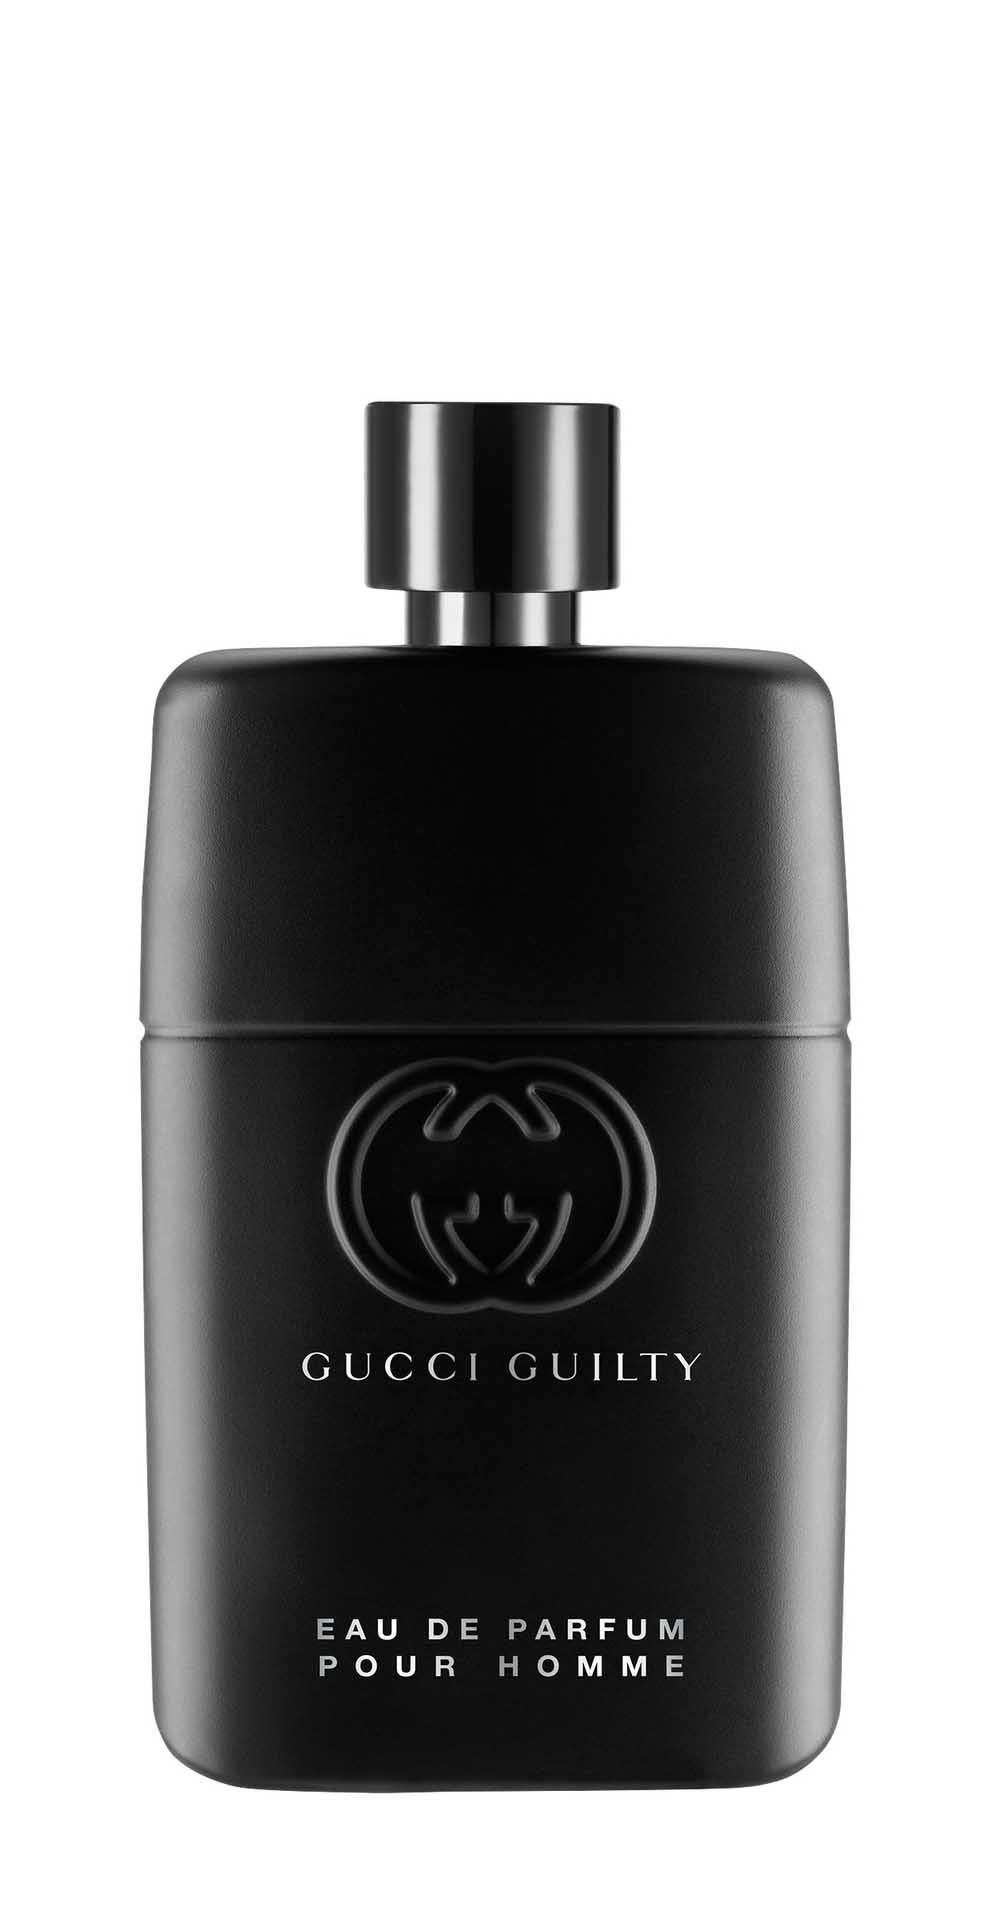 Парфюмерная вода Gucci Guilty Pour Homme Eau de Parfum для мужчин, 90 мл gucci guilty intense pour homme 50